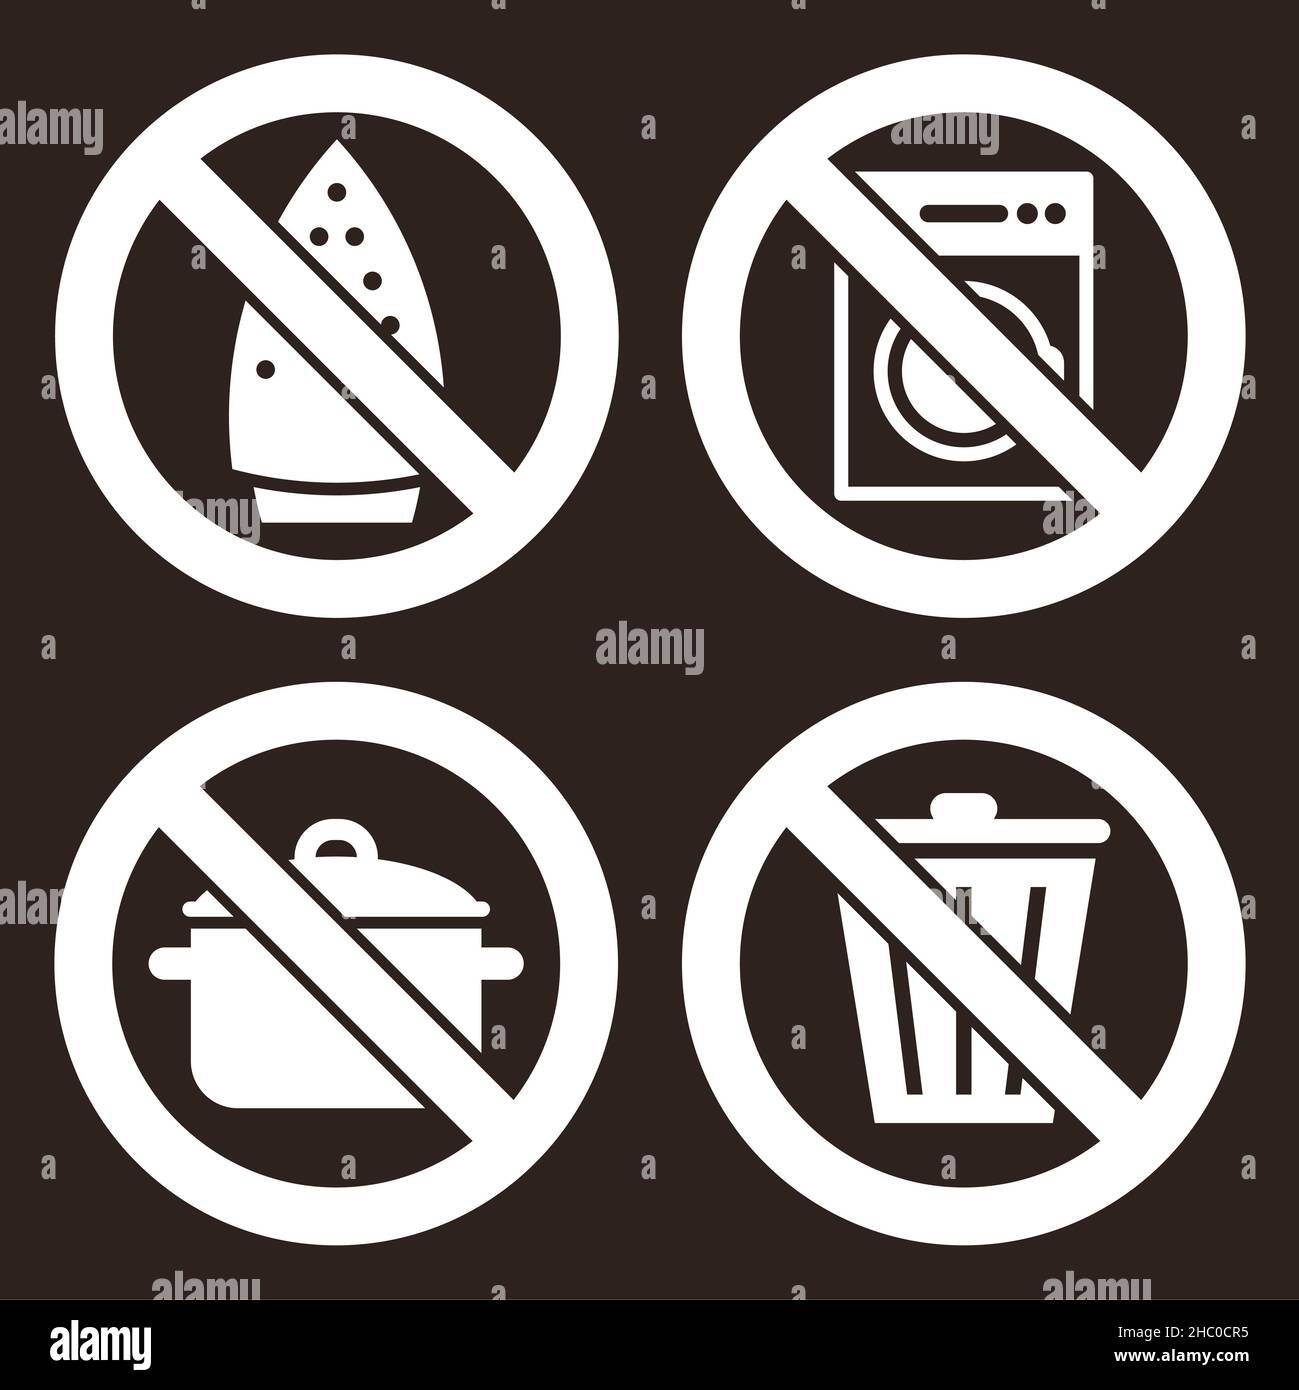 Bügelnn`t nicht erlaubt, keine Waschmaschine, kein Kochen und werfen Sie kein Müllschild auf dunklen Hintergrund Stockfoto